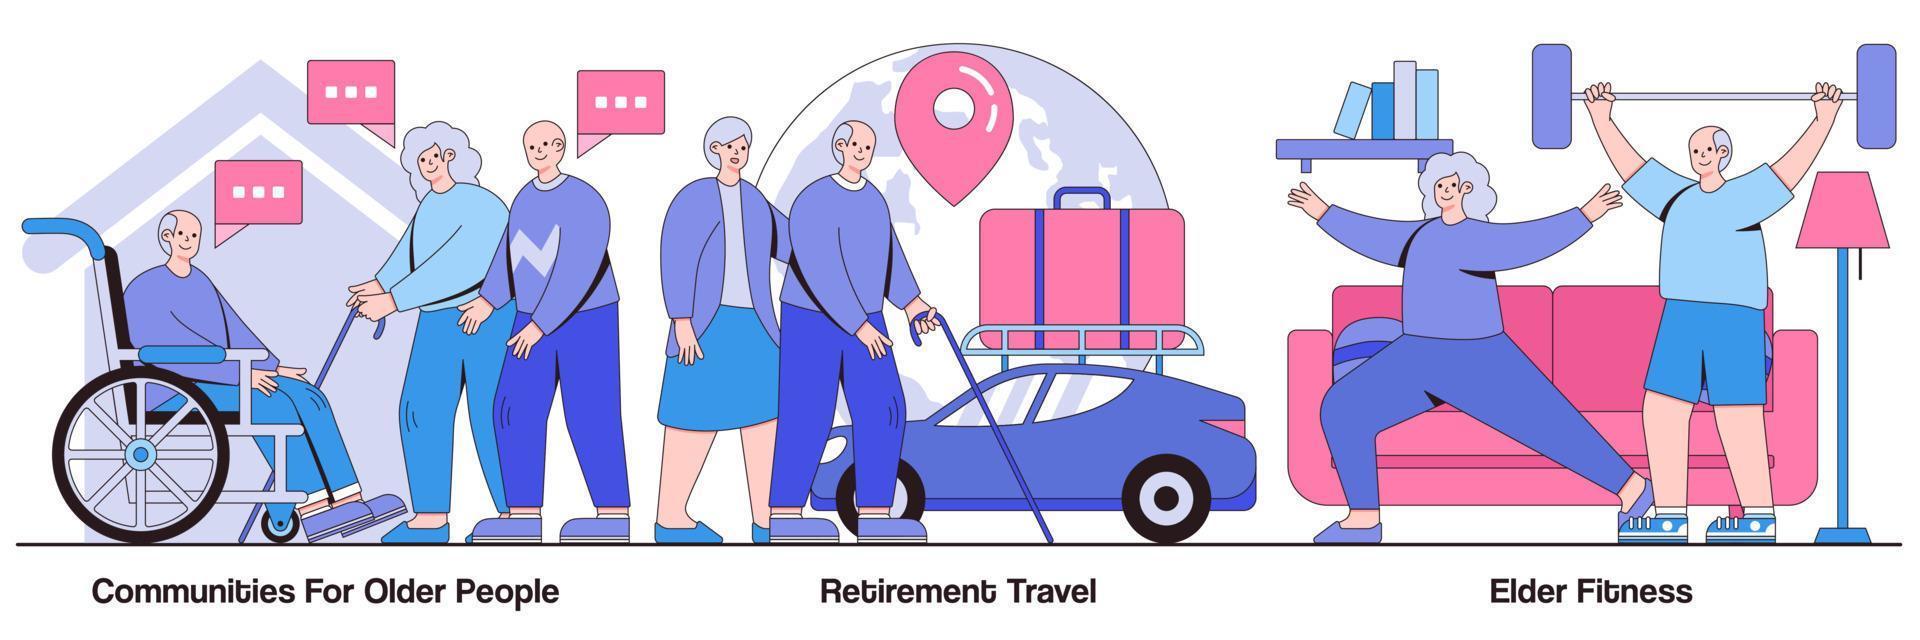 gemeenschappen voor gepensioneerden, pensioenreizen en geïllustreerd fitnesspakket voor ouderen vector